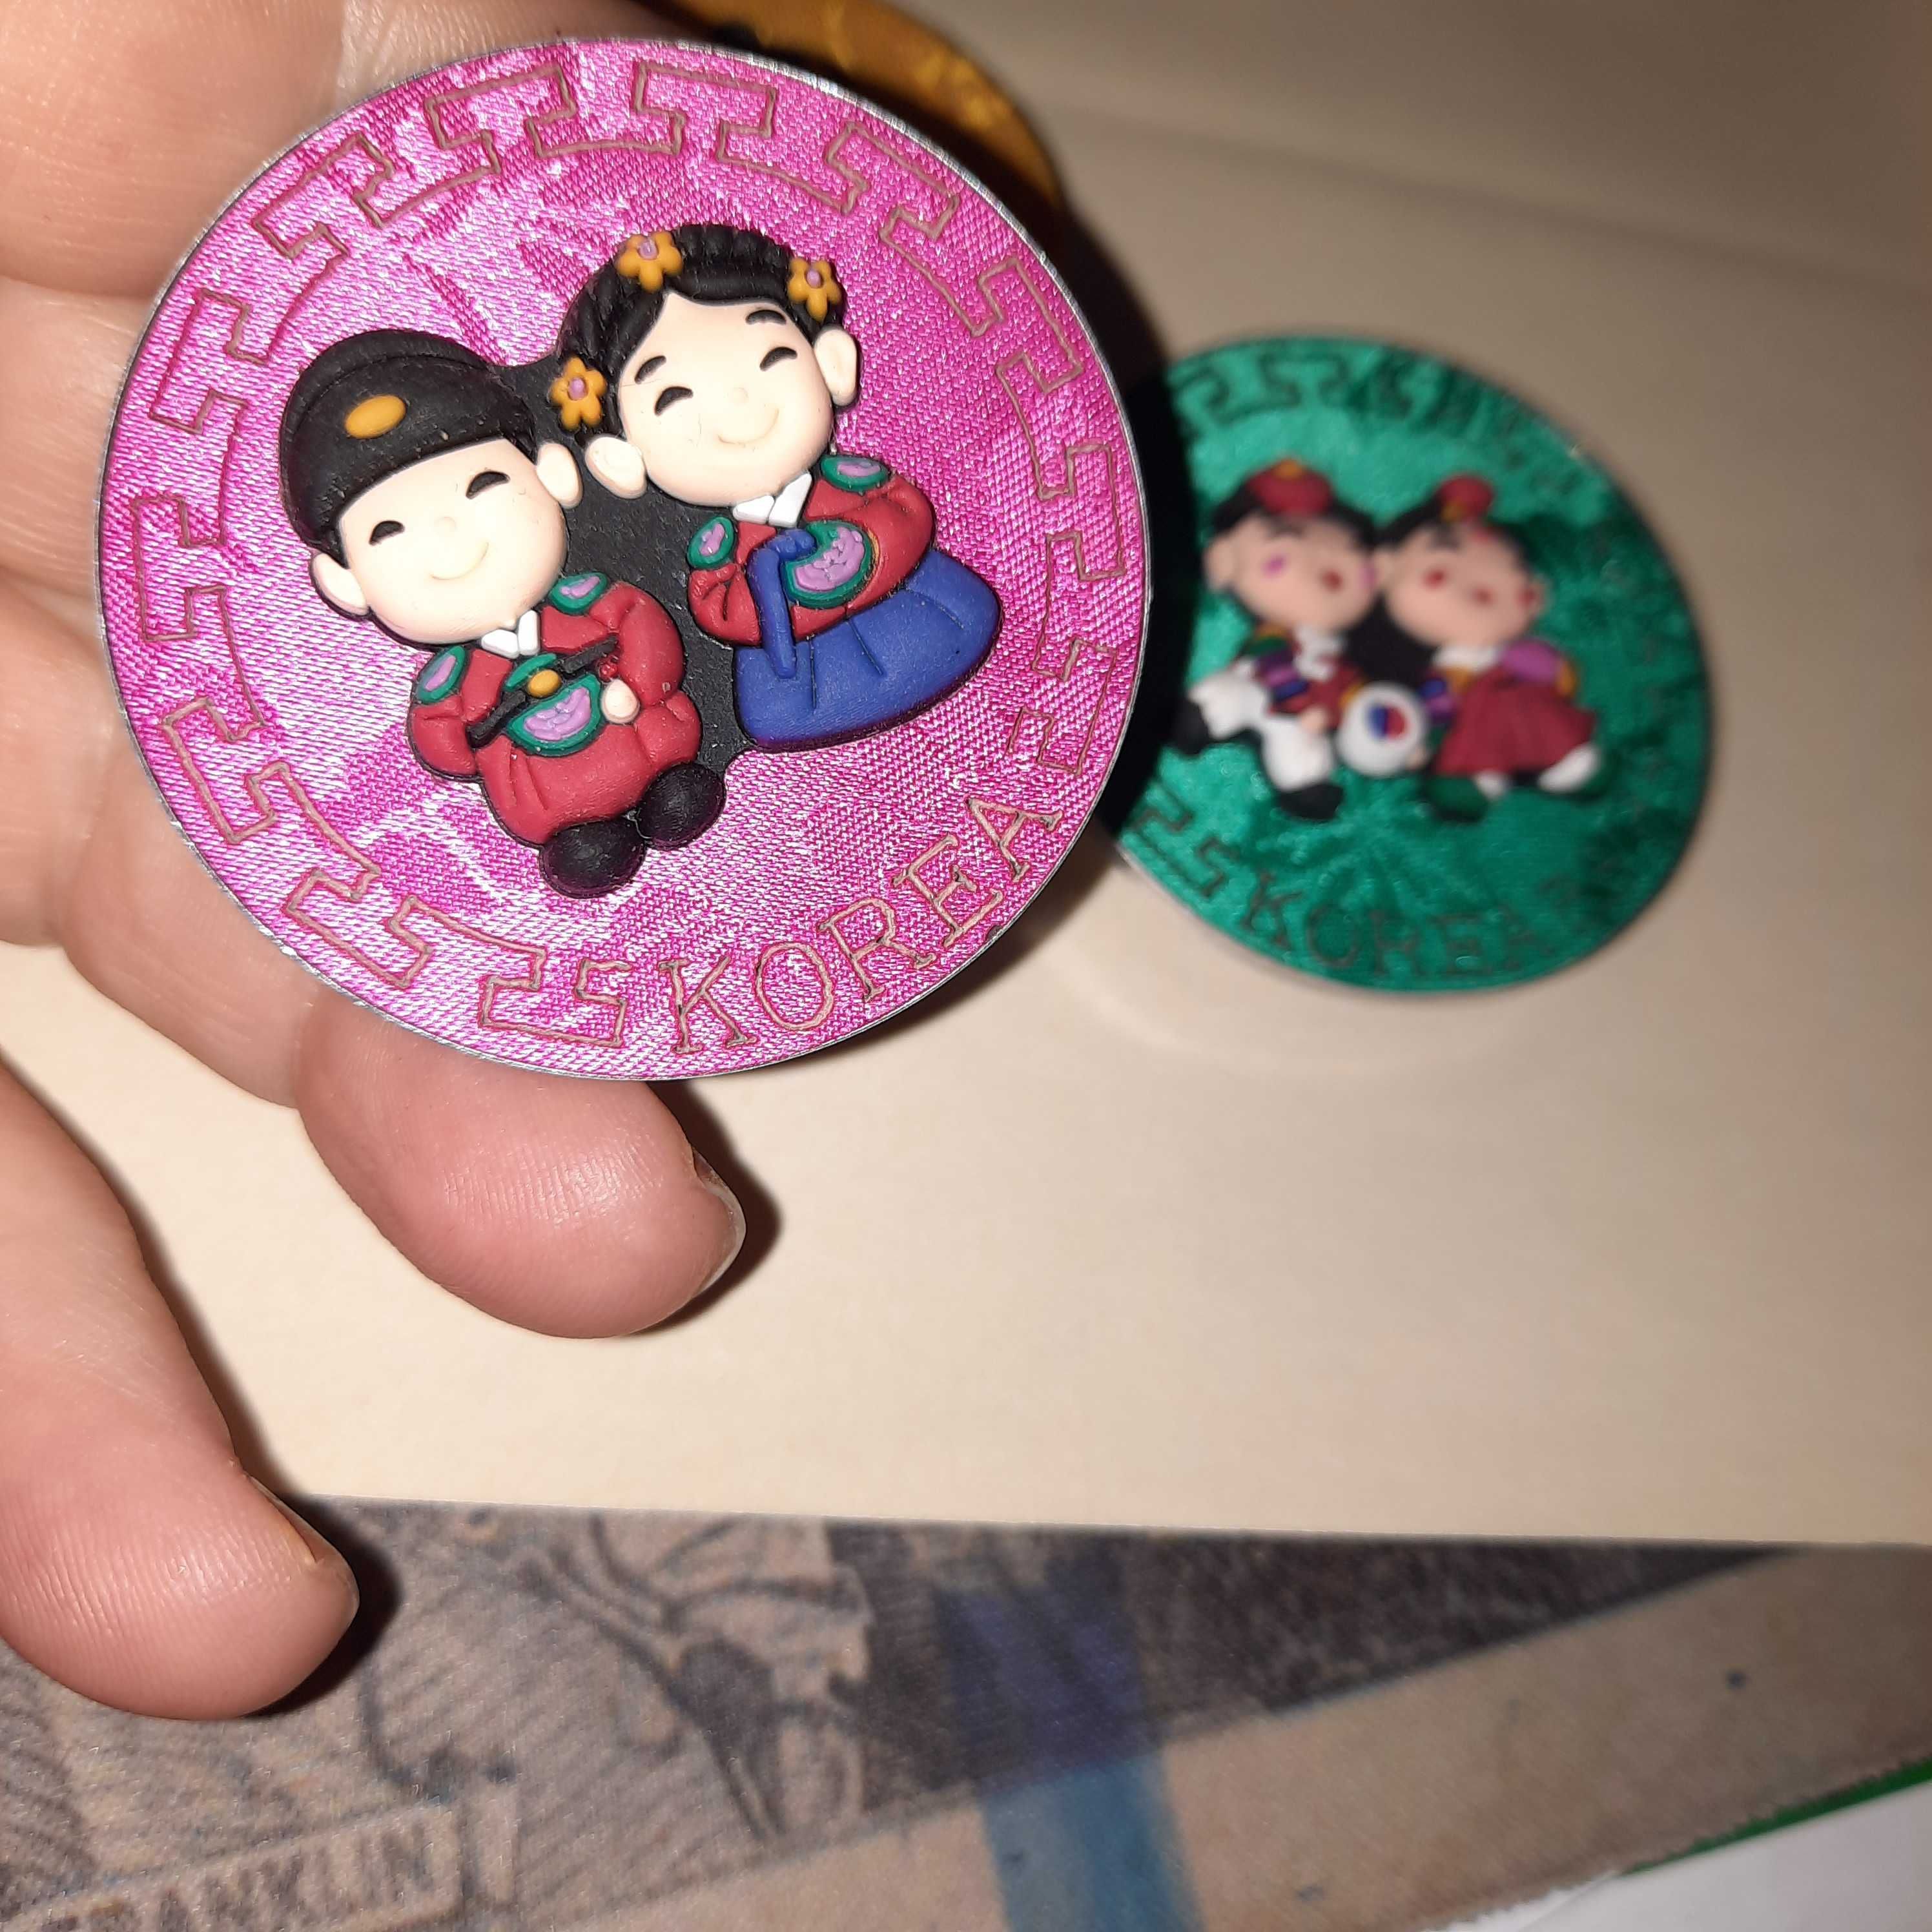 подарок магнит круглый из Корея набор три штуки сувенир